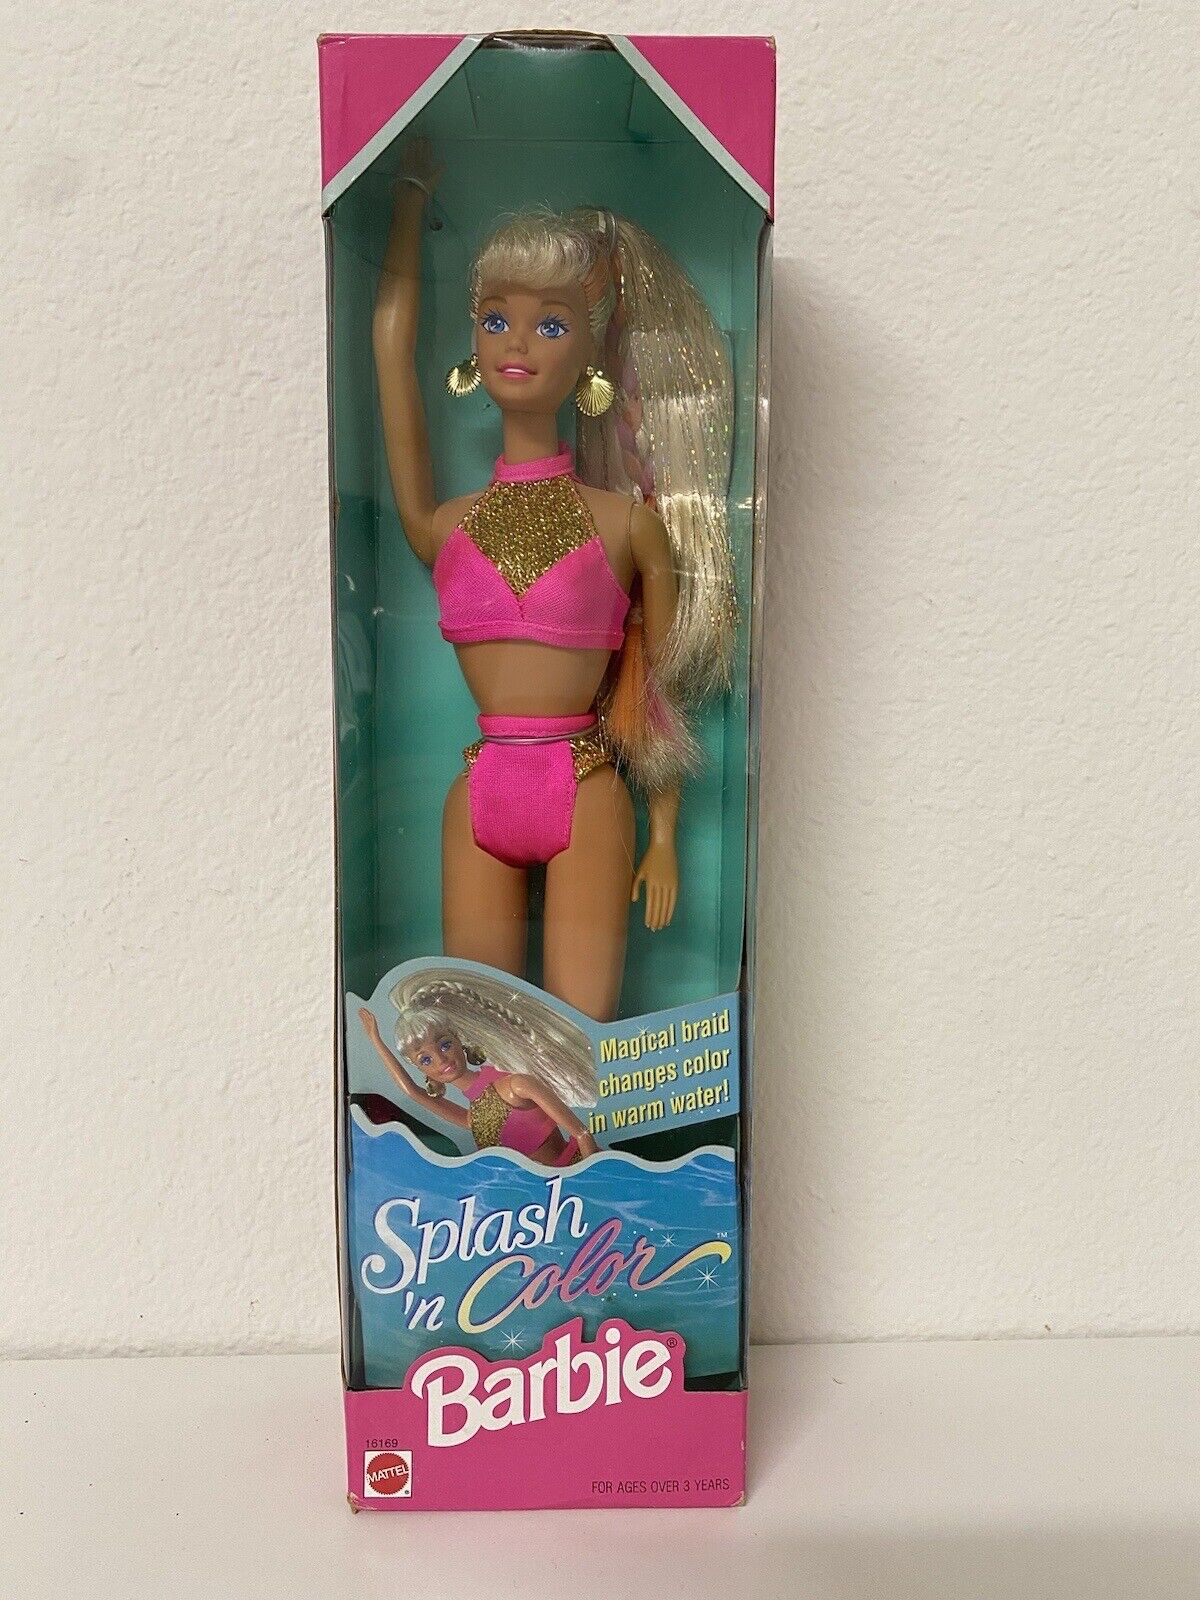 Splash 'n Color Barbie Doll Mattel #16169 NRFB Vintage 1996